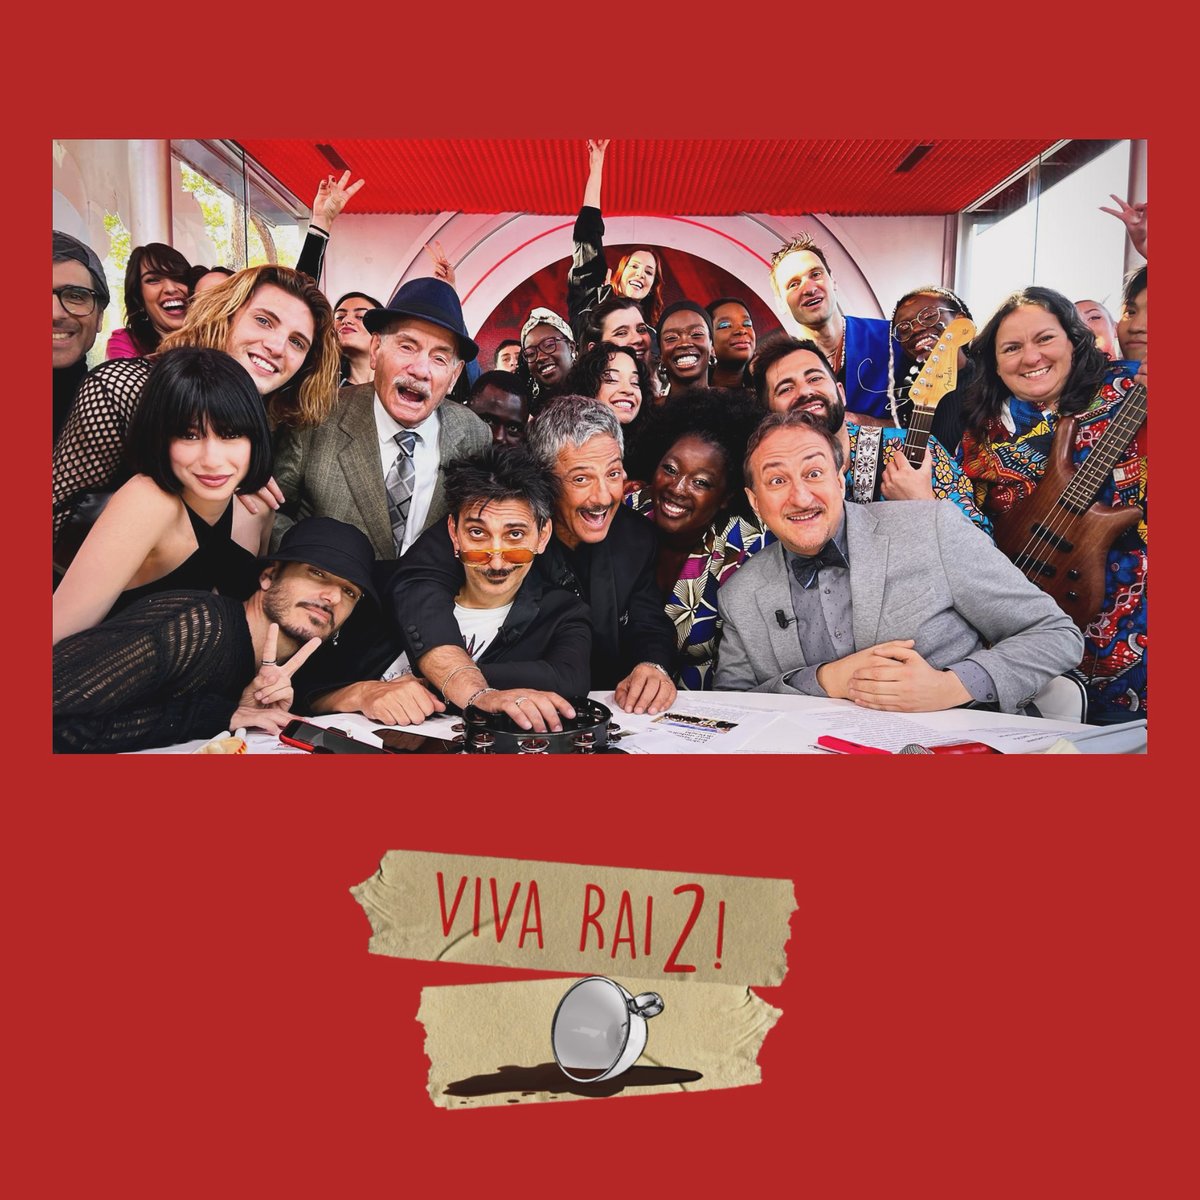 Family portrait 📷 ci vediamo domani, con l’ultima puntata della settimana di #VivaRai2 ❤️ @Fiorello @fabriggio @MauroCasciari